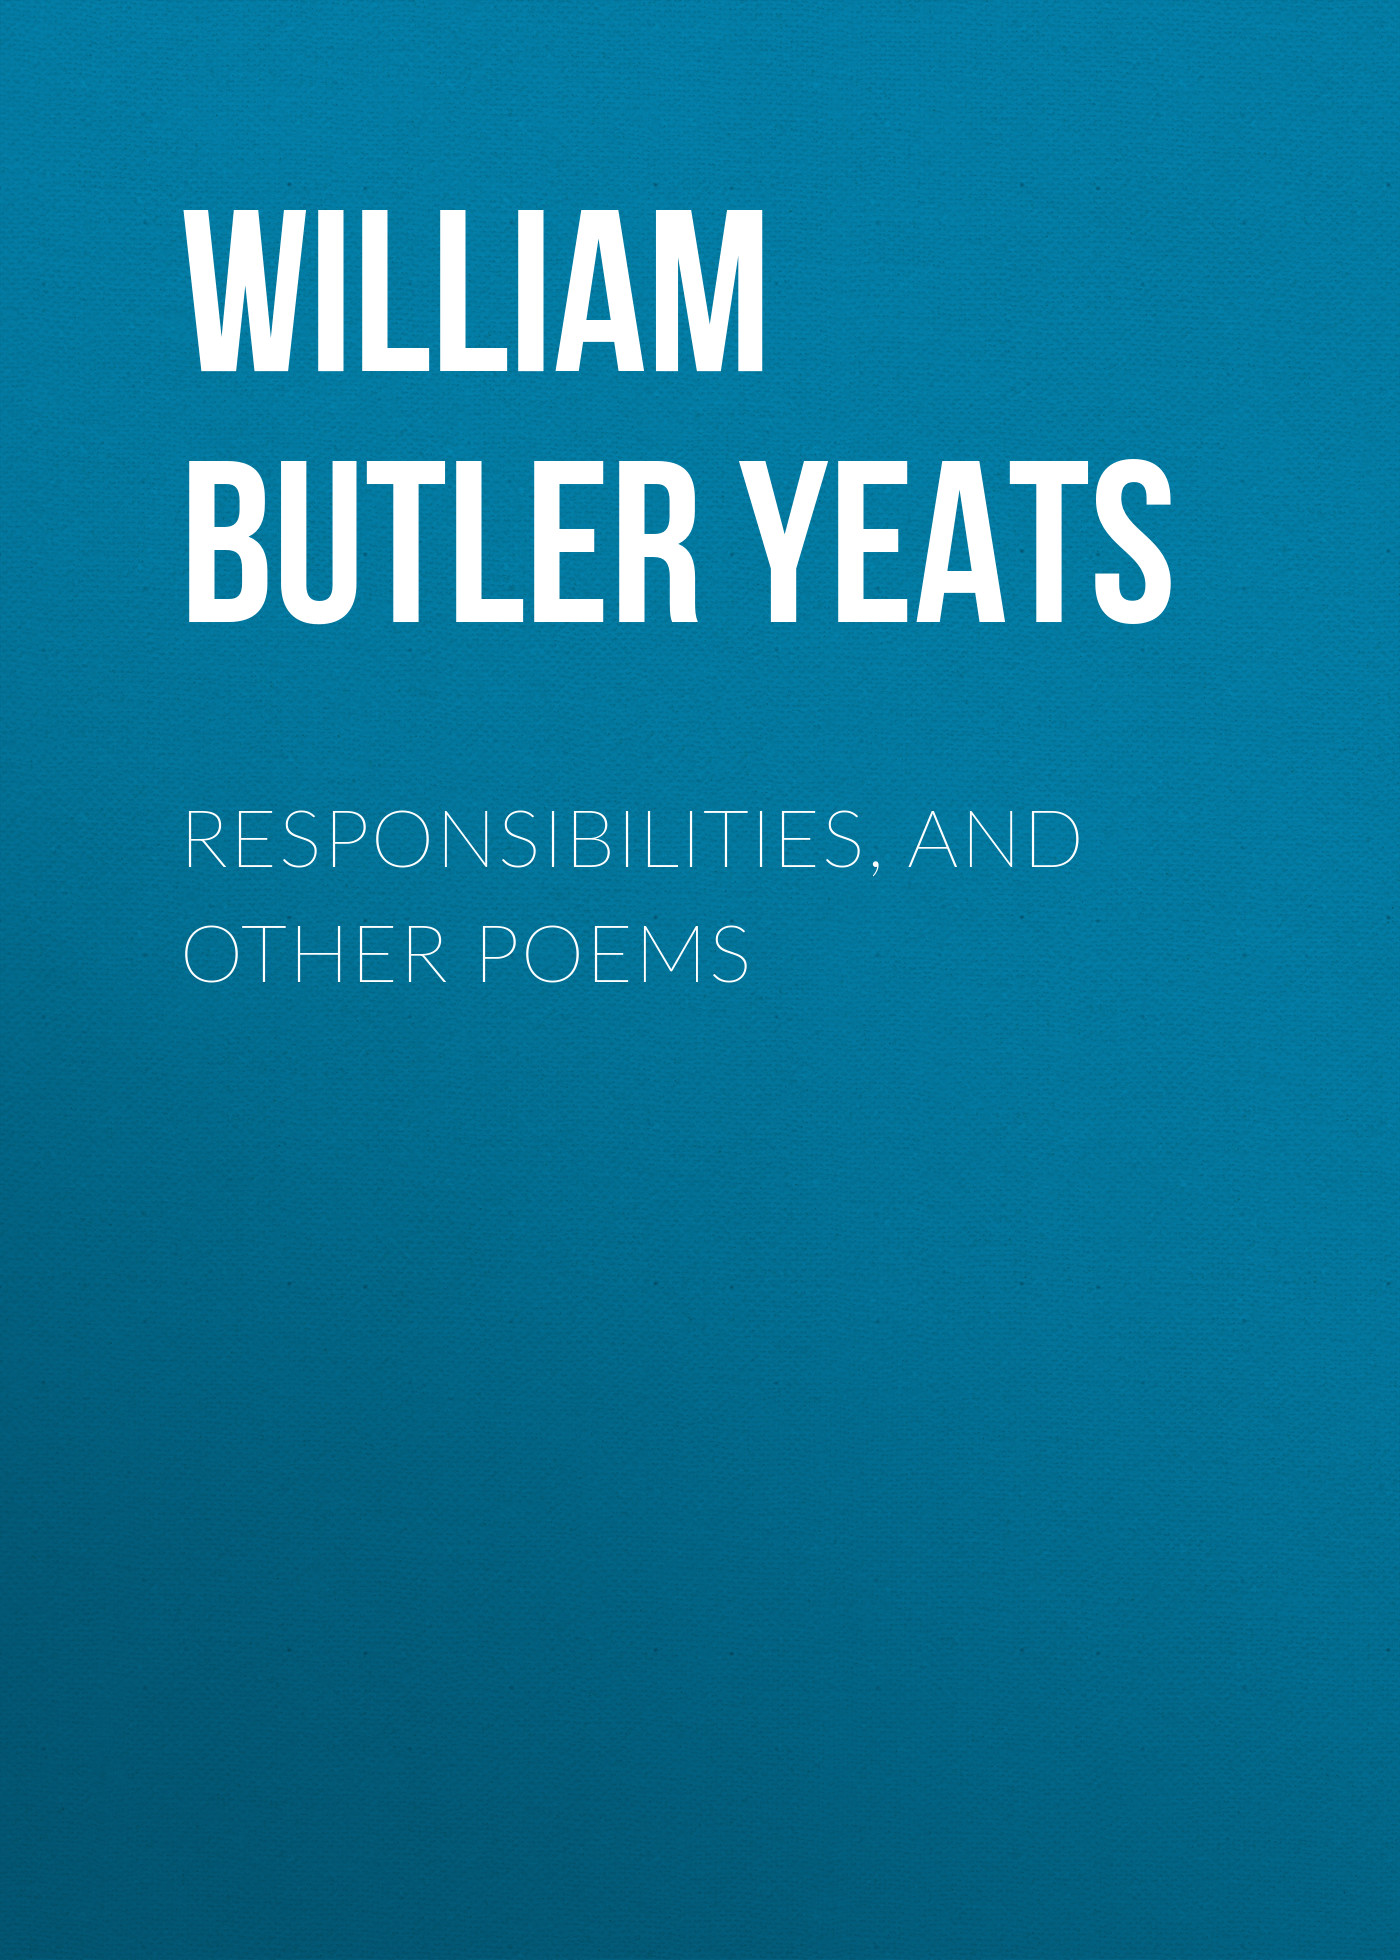 Книга Responsibilities, and other poems из серии , созданная William Butler Yeats, может относится к жанру Поэзия, Зарубежная классика, Зарубежные стихи, Иностранные языки. Стоимость электронной книги Responsibilities, and other poems с идентификатором 23164091 составляет 0 руб.